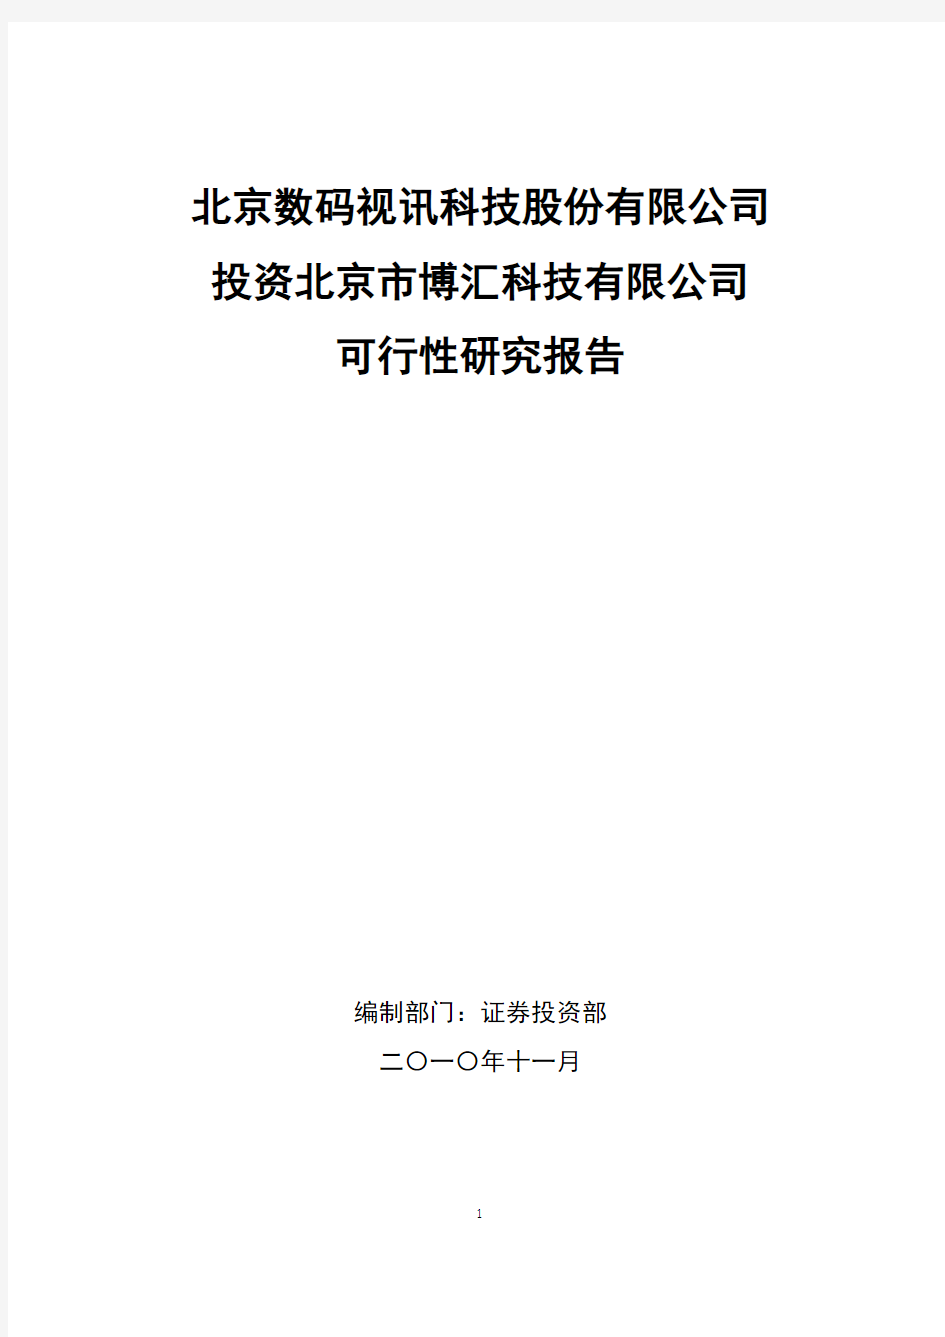 北京数码视讯科技股份有限公司投资北京市博汇科技有限公司可行性研究报告